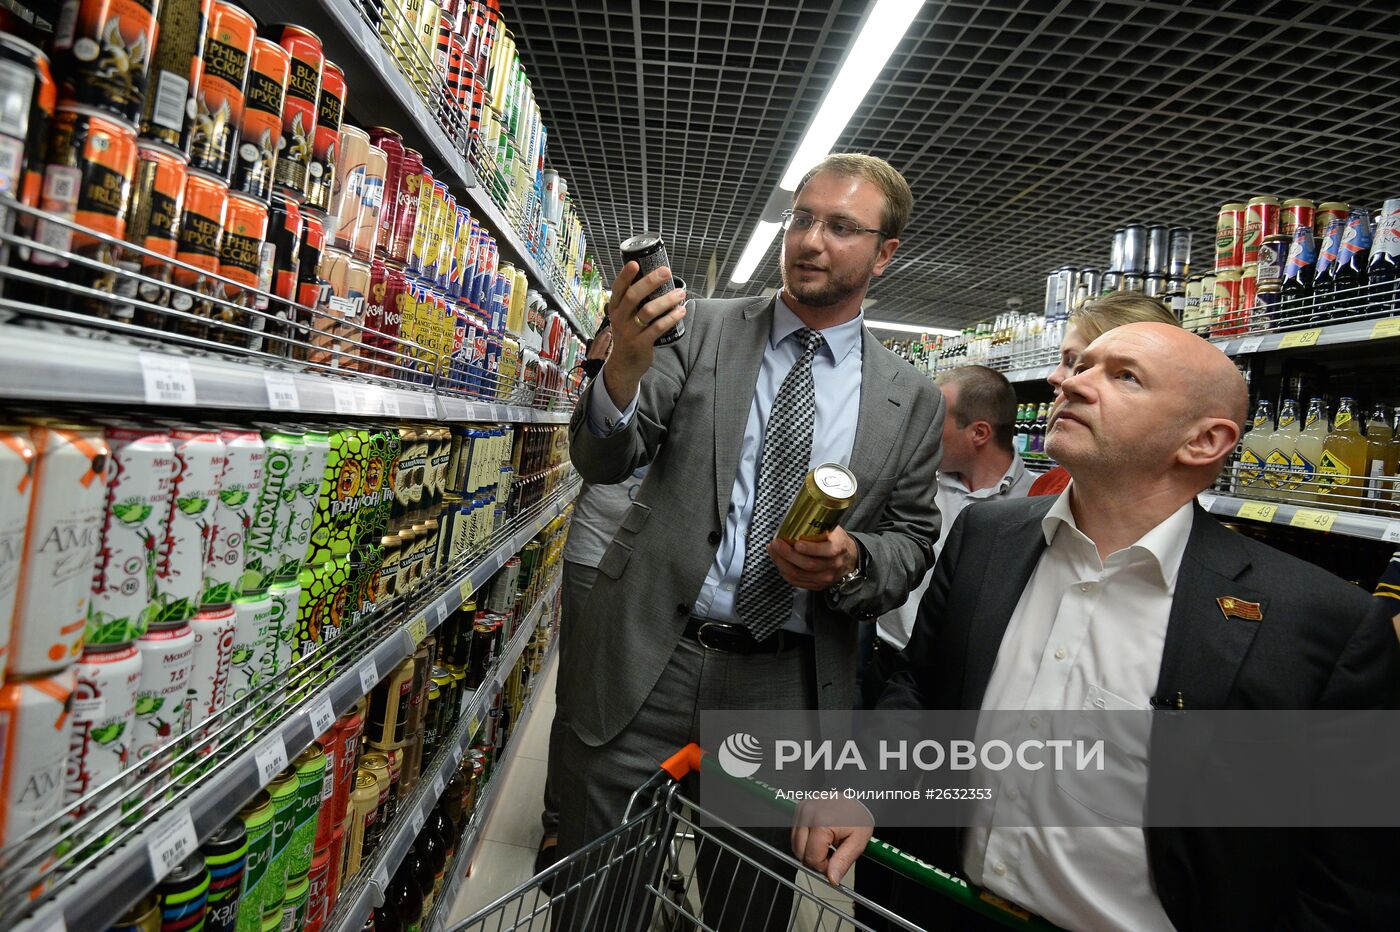 Рейд по выявлению незаконной продажи алкоэнергетиков в рамках проекта "Народный контроль"